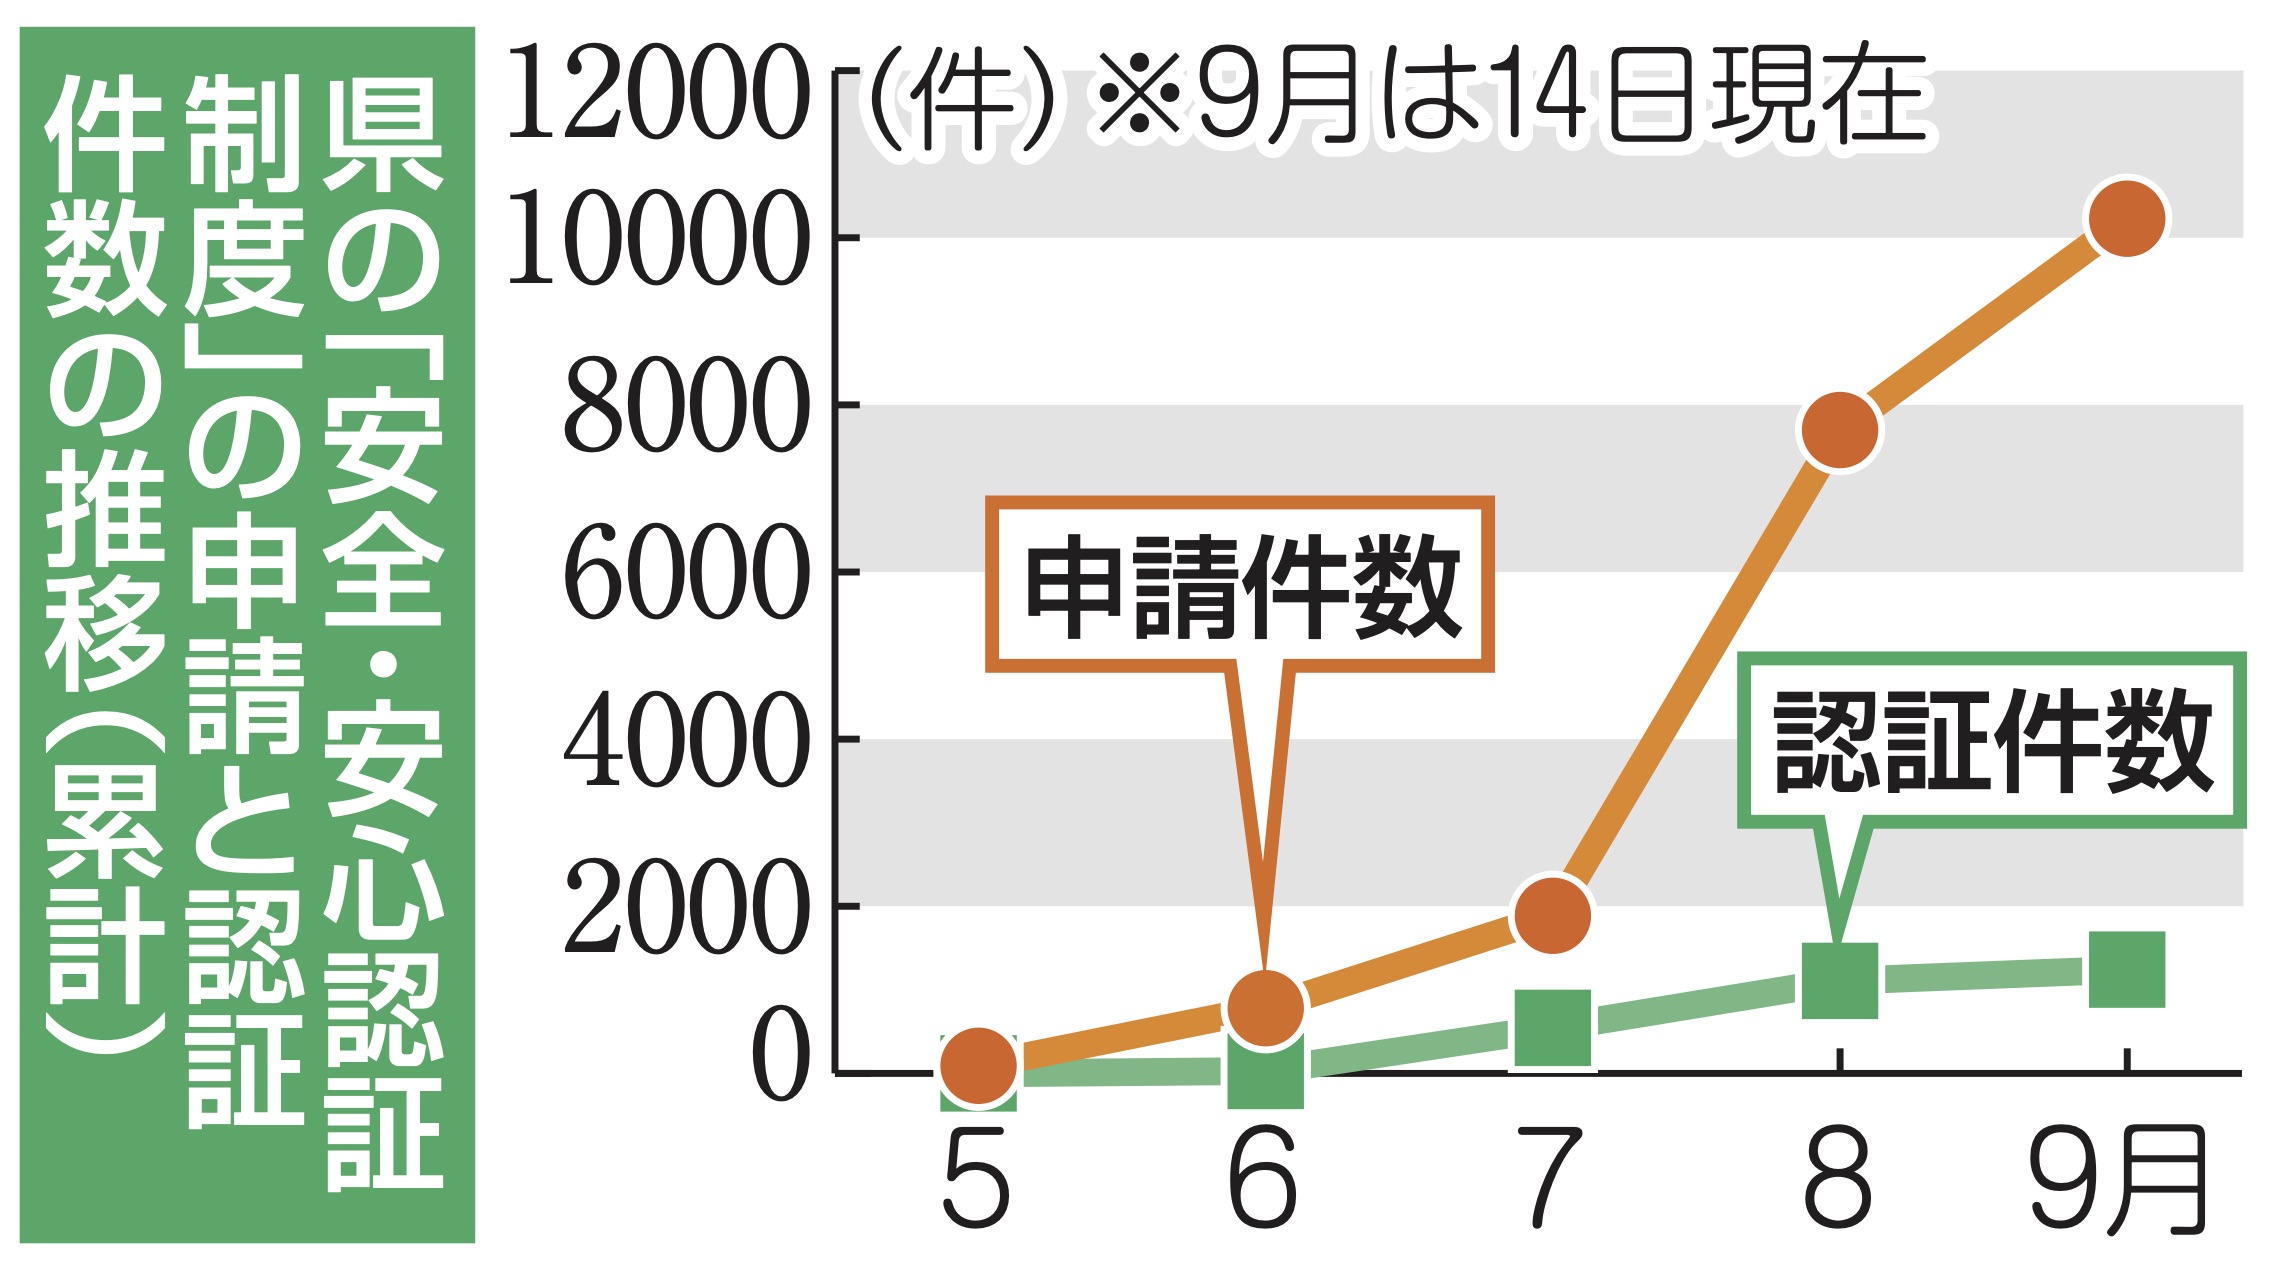 静岡県の「安全・安心認証制度」の申請と認証件数の推移（累計）